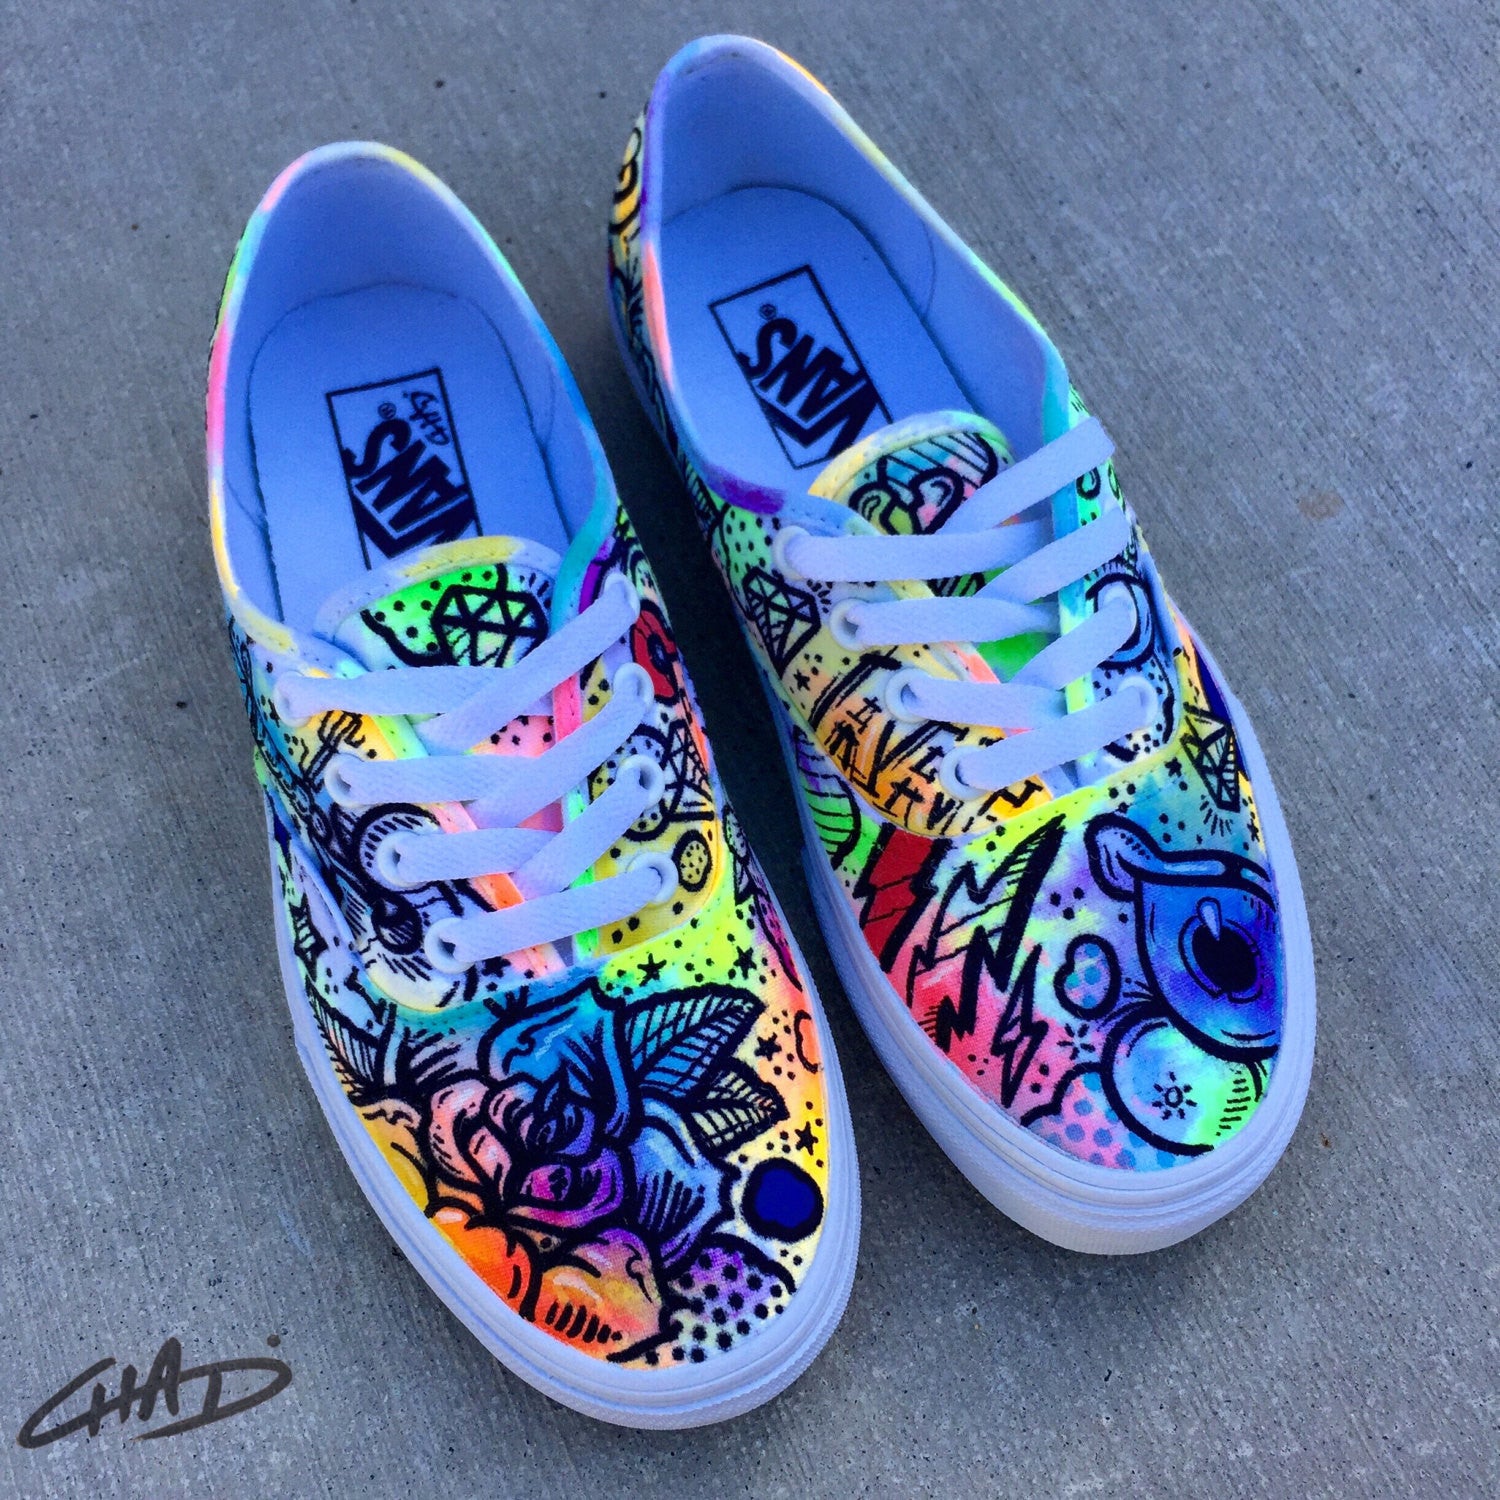 vans painted shoes contest